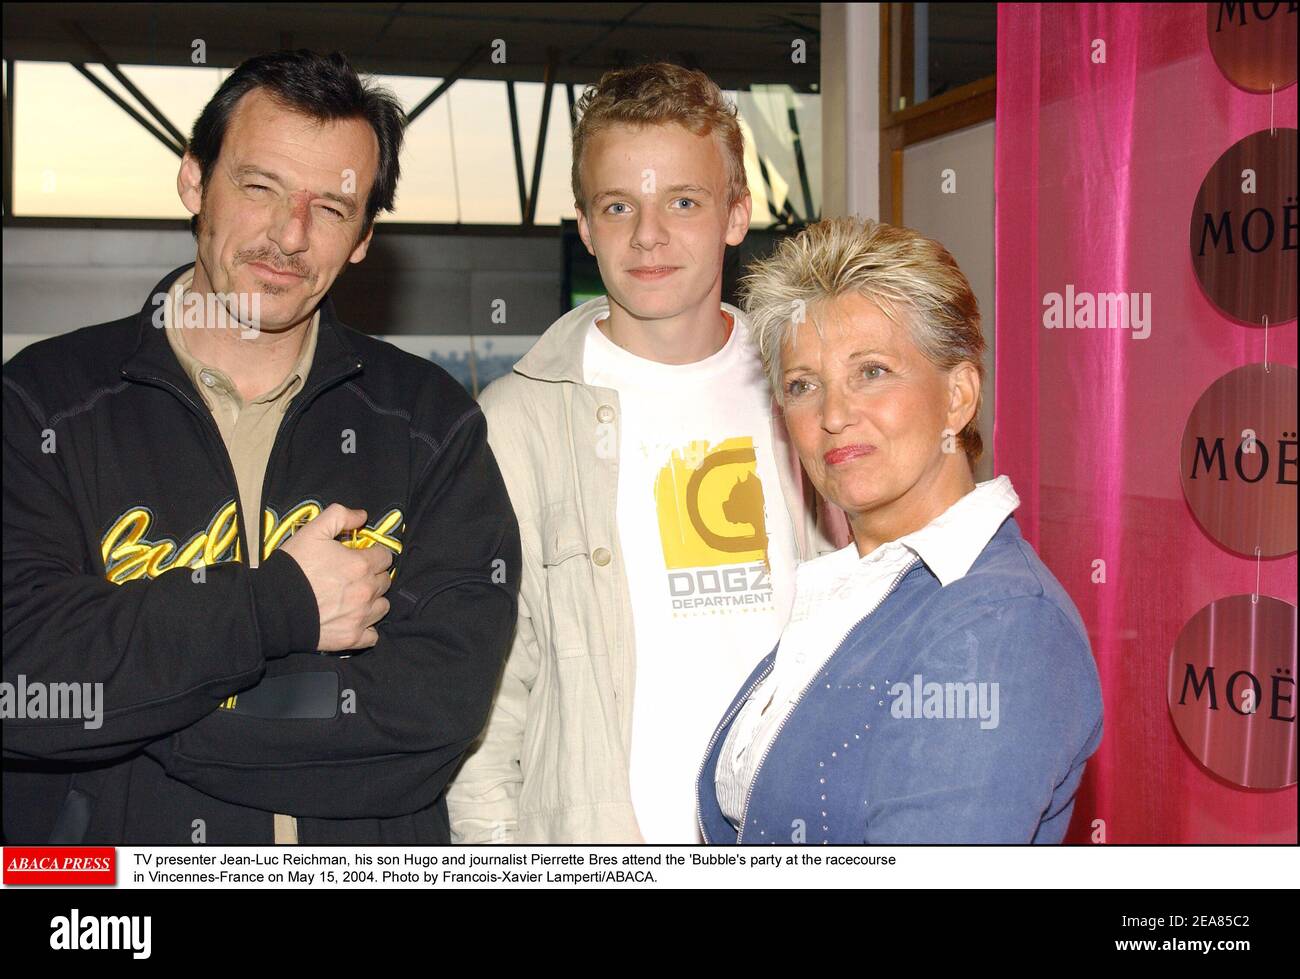 Le présentateur de télévision Jean-Luc Reichmann, son fils Hugo et le  journaliste Pierrette Bres assistent à la fête de la bulle à l'hippodrome  de Vincennes-France le 15 mai 2004. Photo de François-Xavier